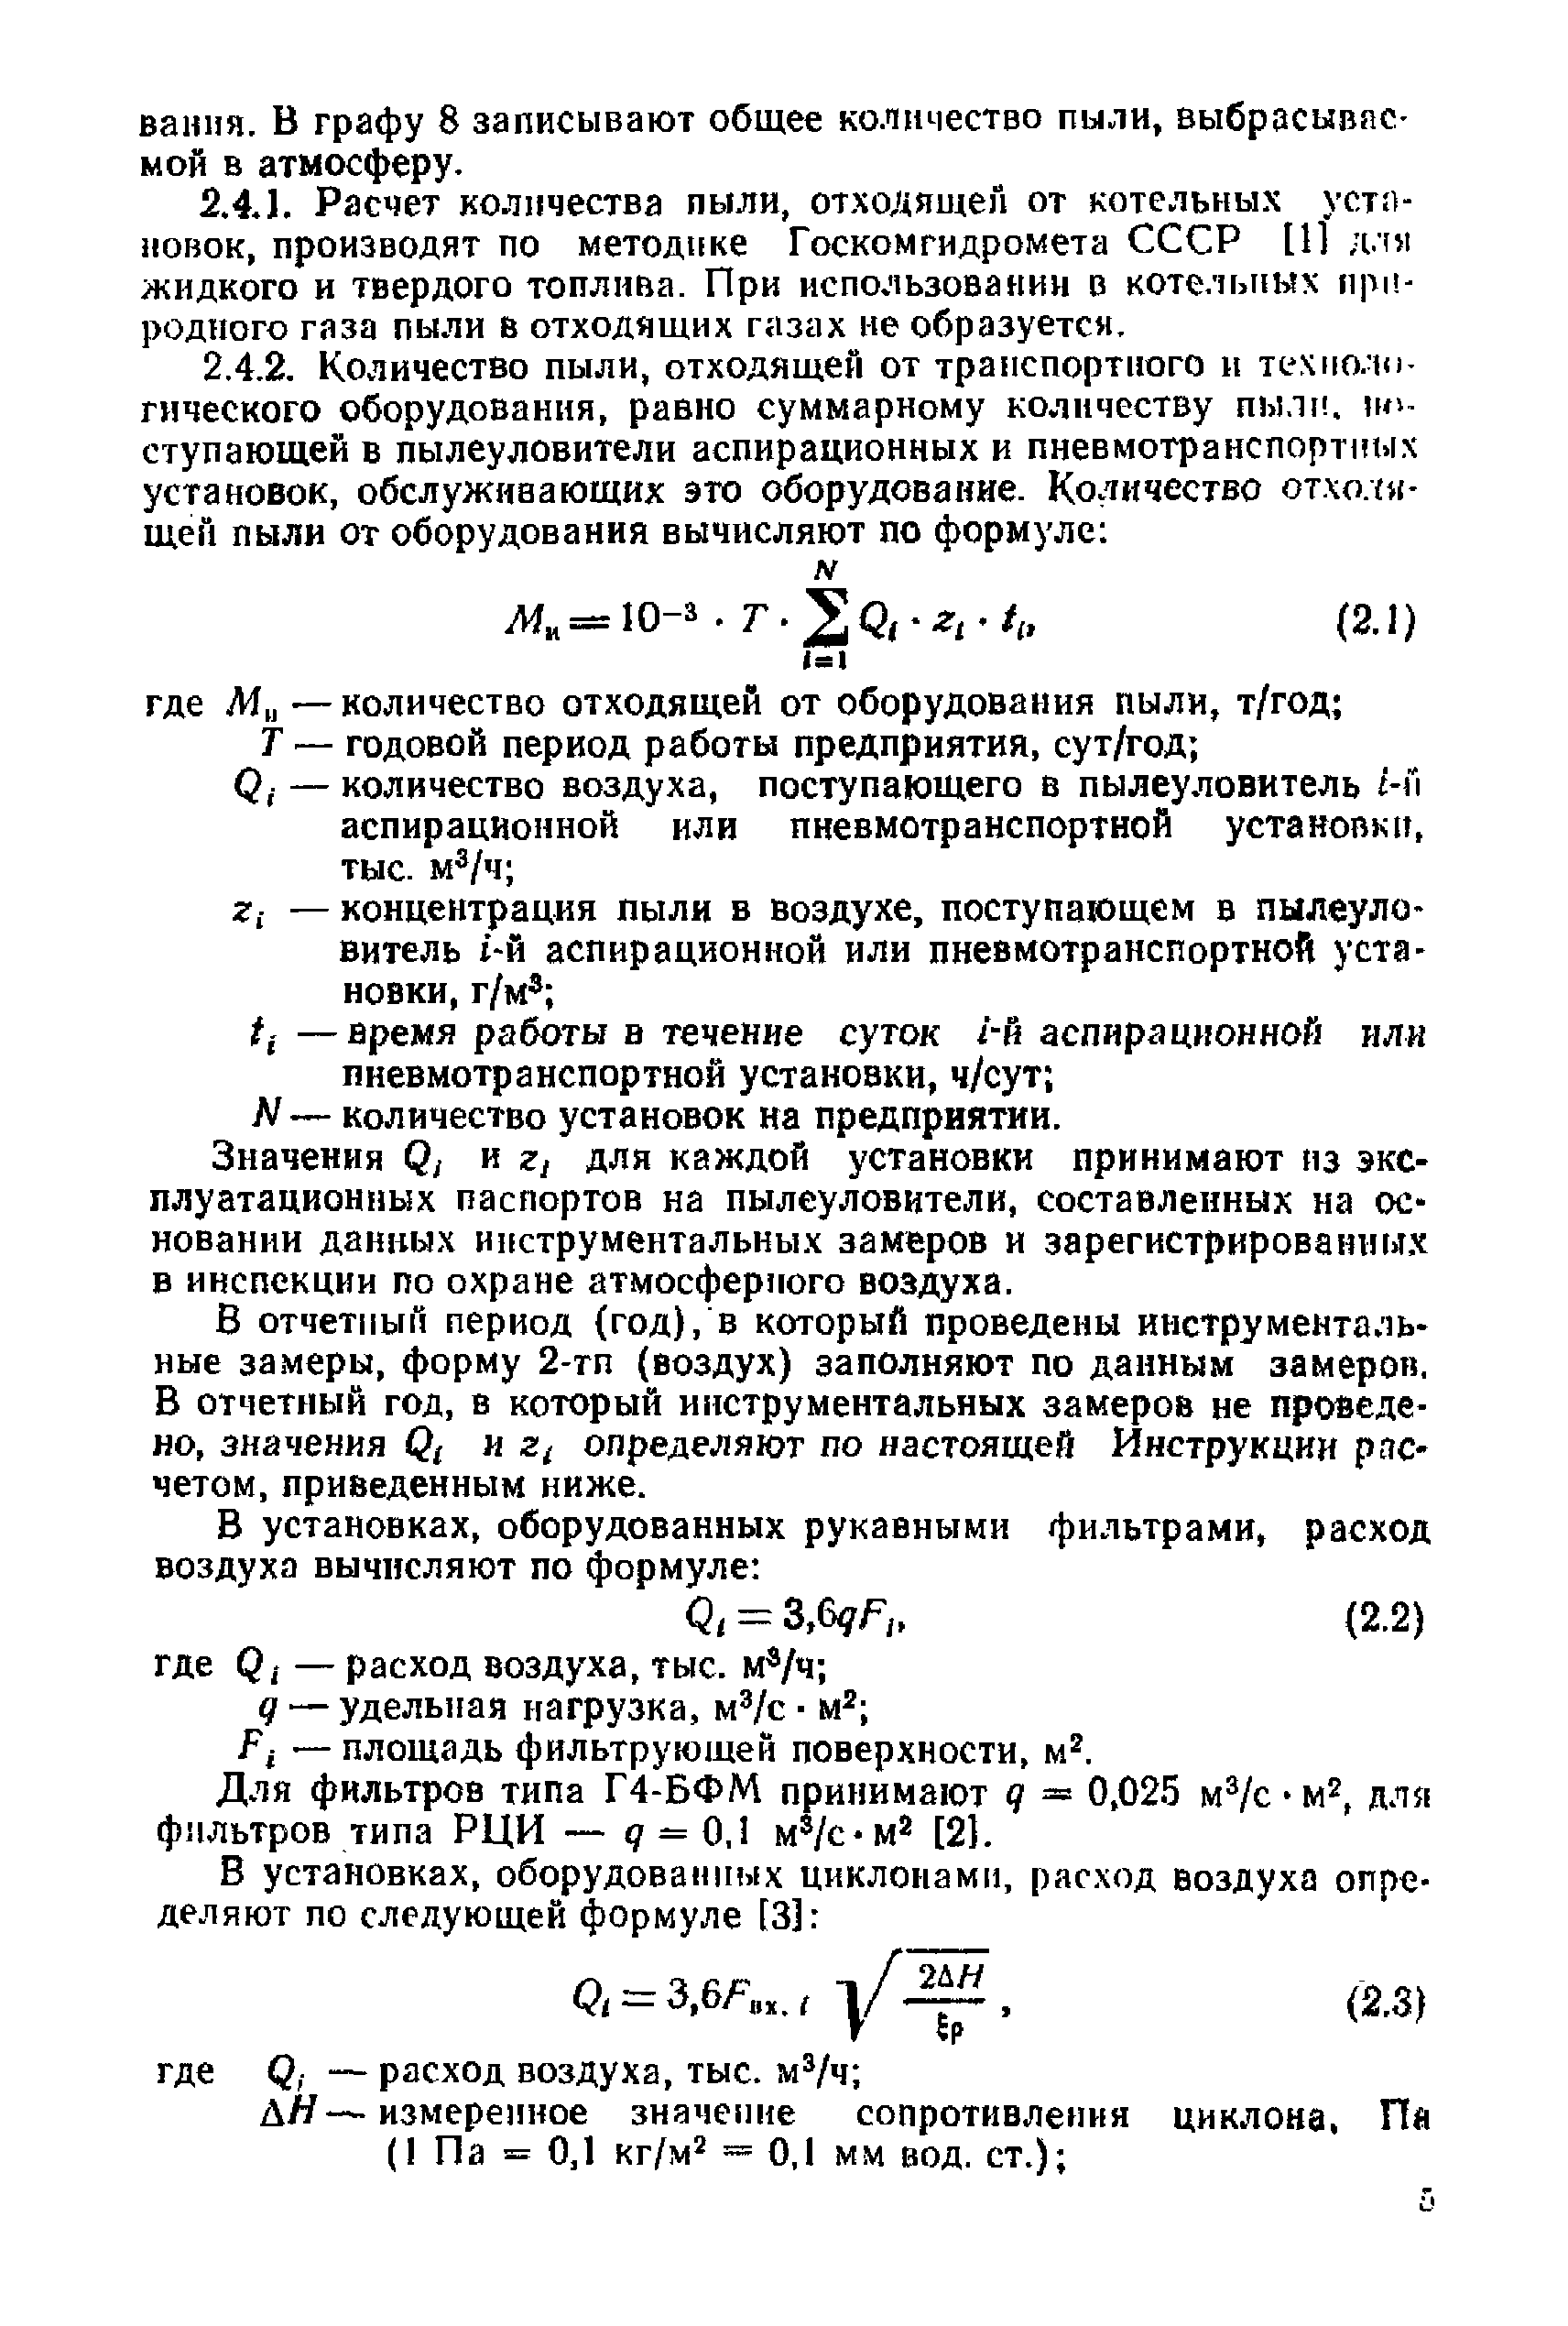 Инструкция 9-12/87